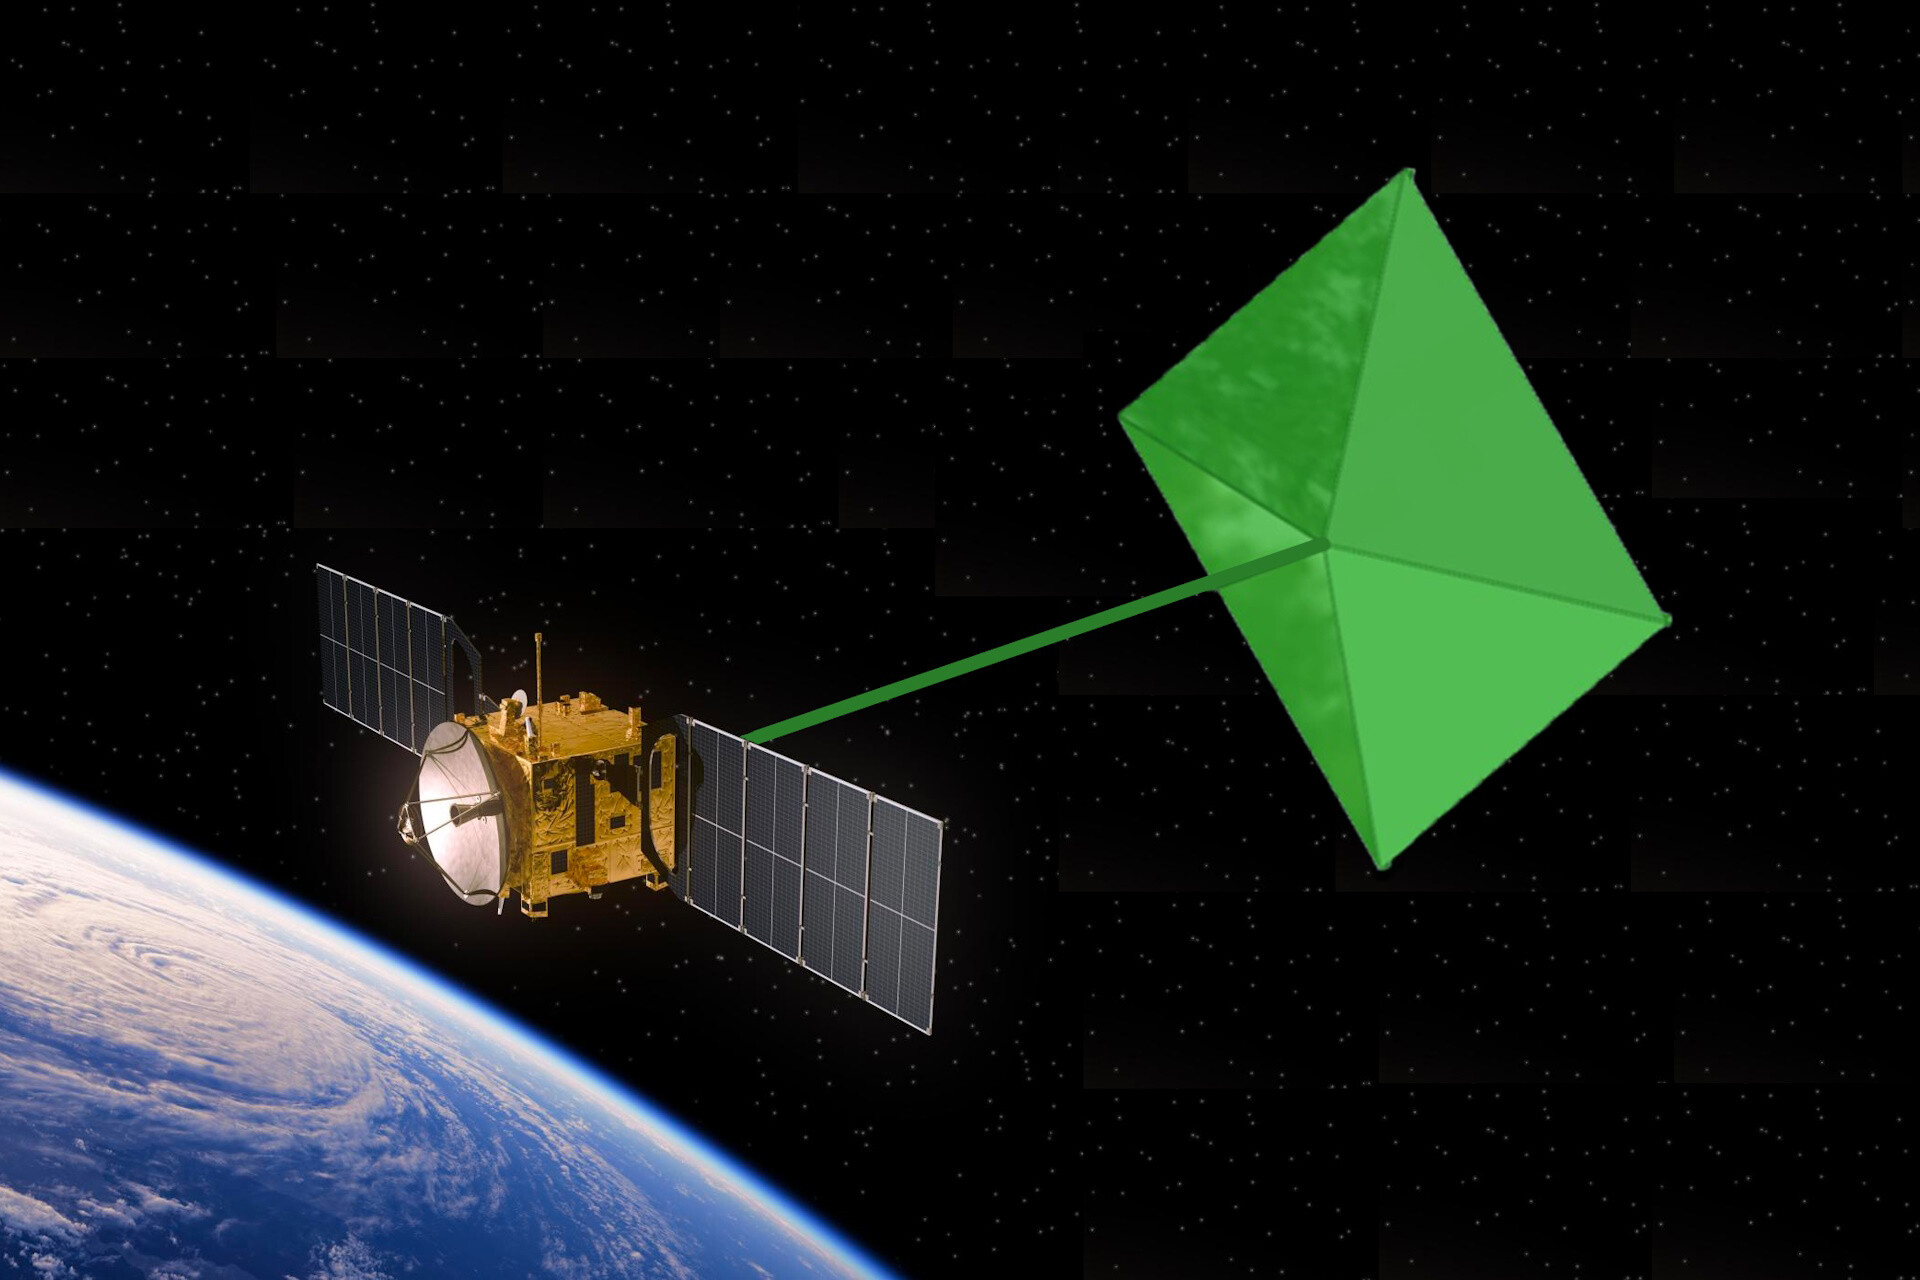 Ein portugiesisches Startup hat eine Technologie entwickelt, um Satelliten nach Abschluss der Mission einzusammeln